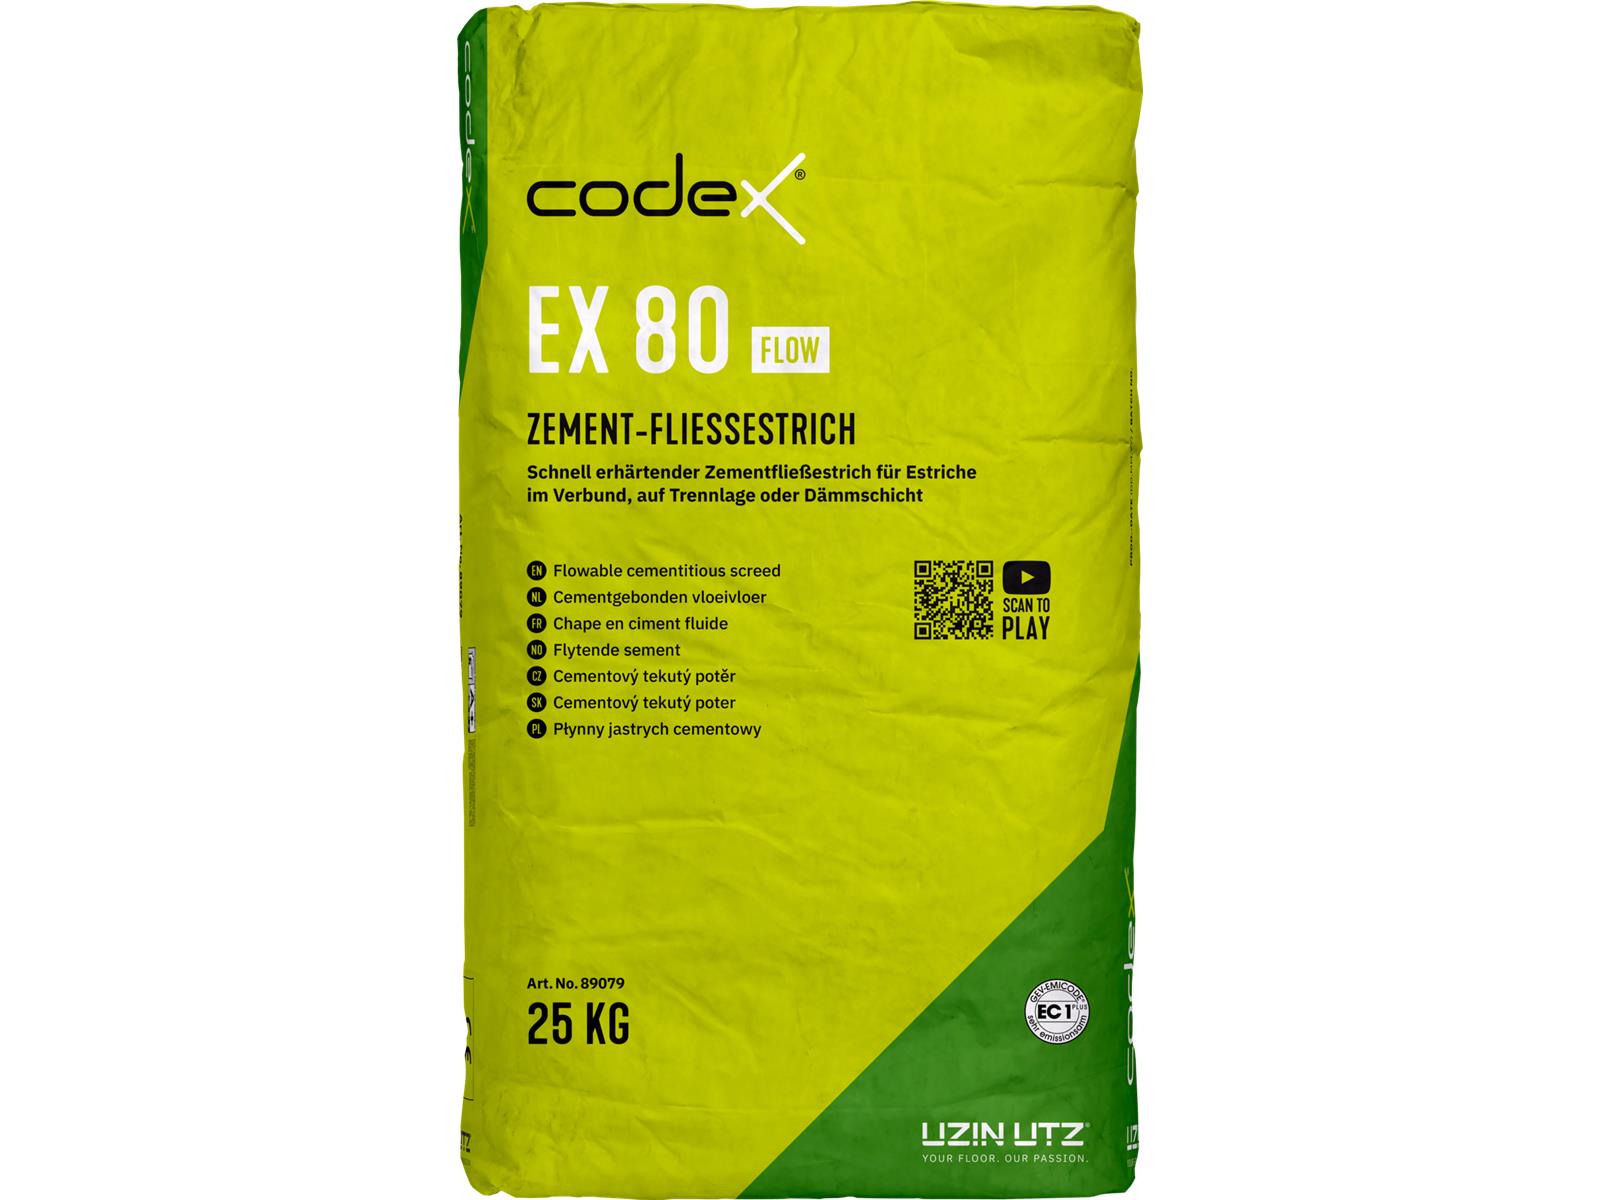 codex EX 80 Flow - 25 kg